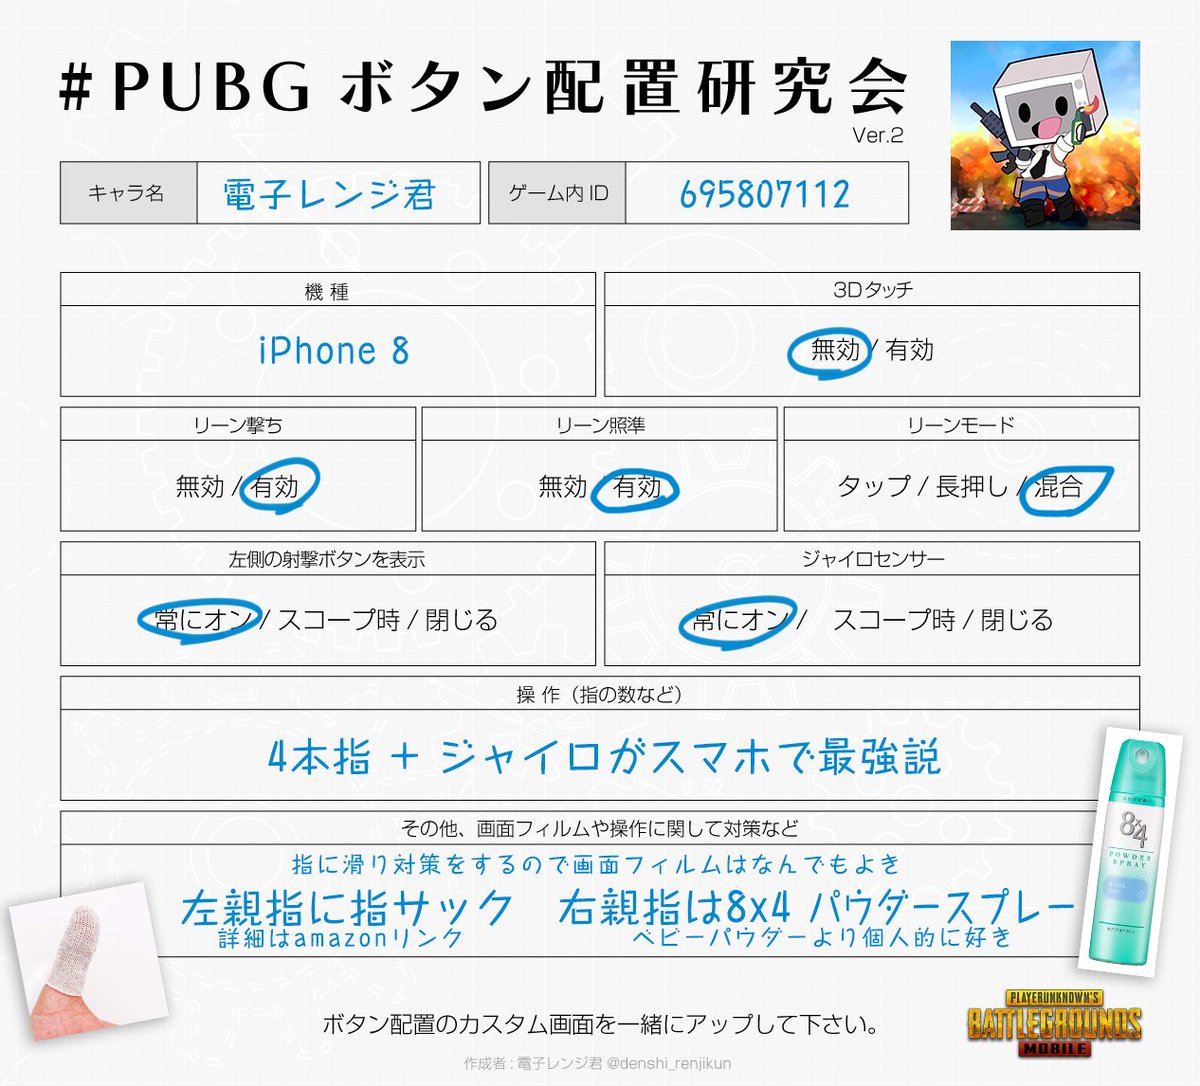 電子レンジ君 Pubg Mobileの操作で重要になってくるボタン配置 みんなで研究しよヽ W ﾉ テンプレ使ってね T Co Uryoj2pefr Pubgボタン配置研究会 Pubg Mobile